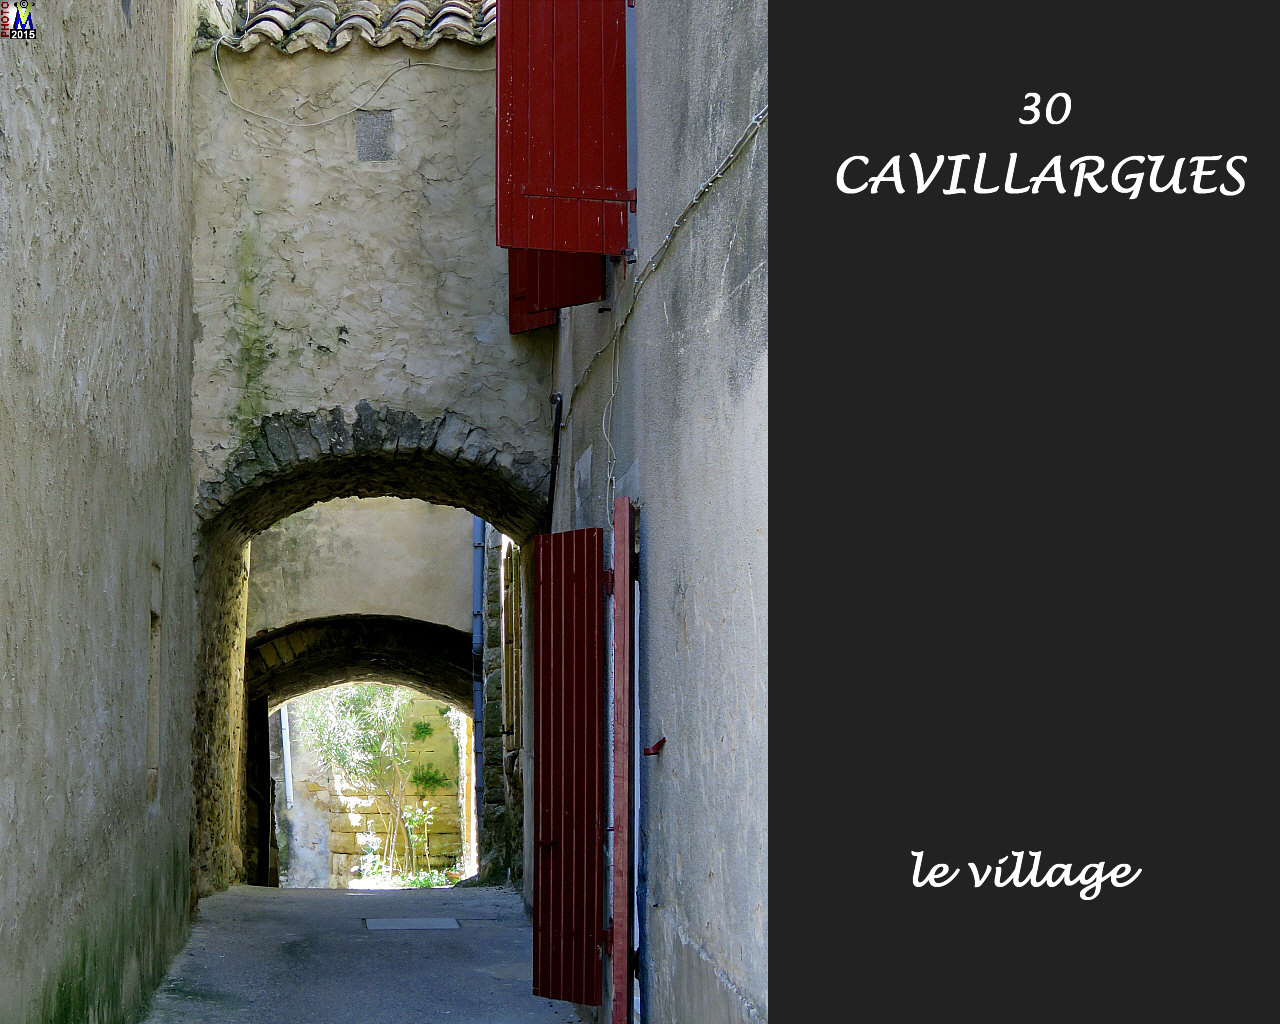 30CAVILLARGUES_village_108.jpg